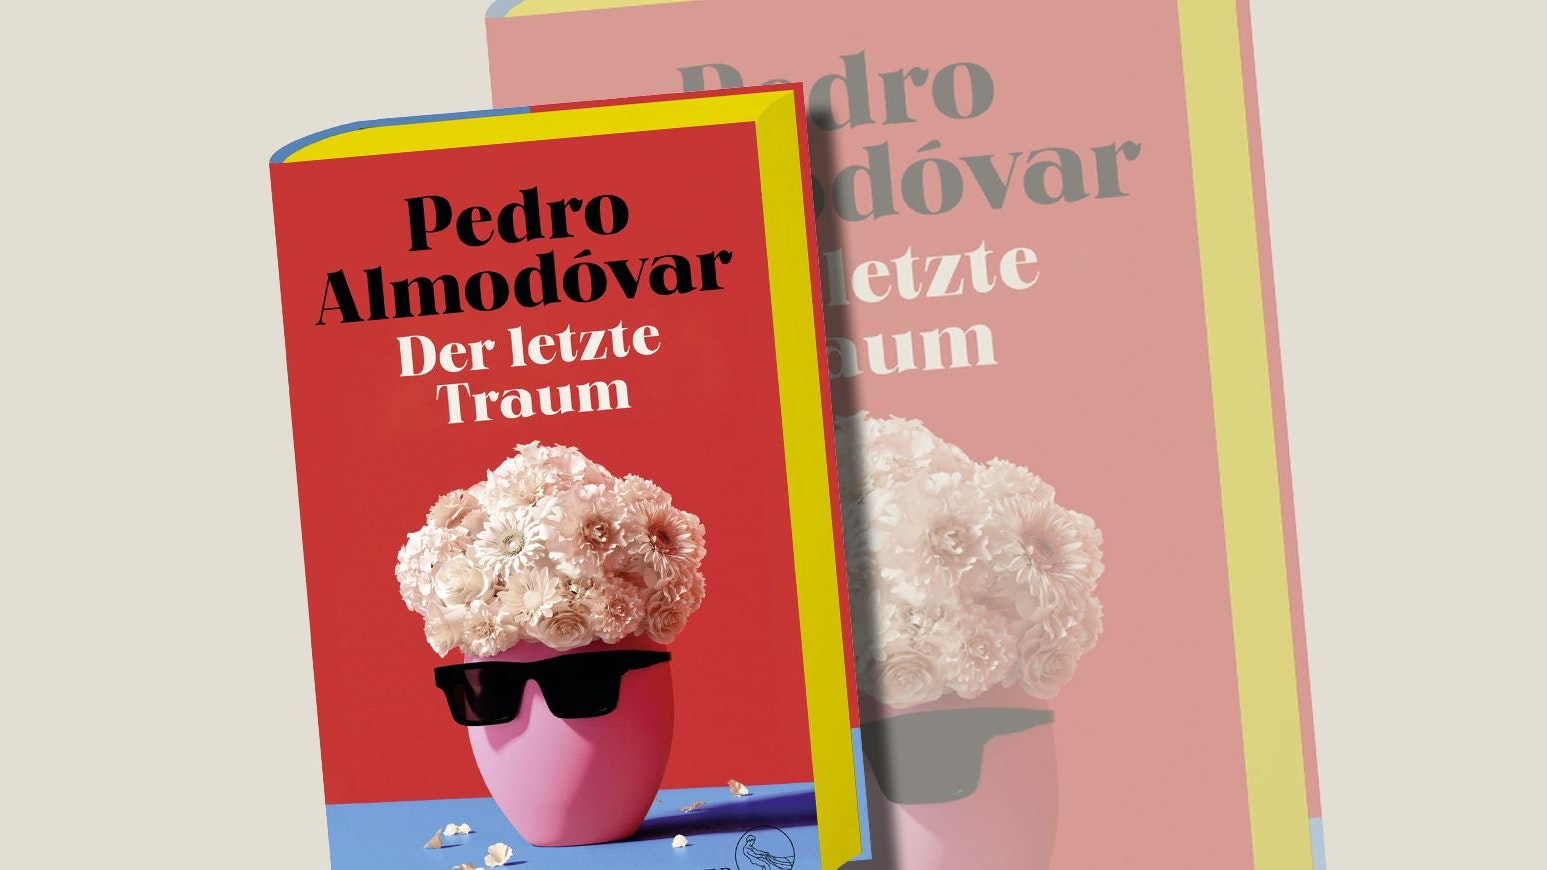 Pedro Almodóvar, "Der letzte Traum", S. Fischer, 24 Euro